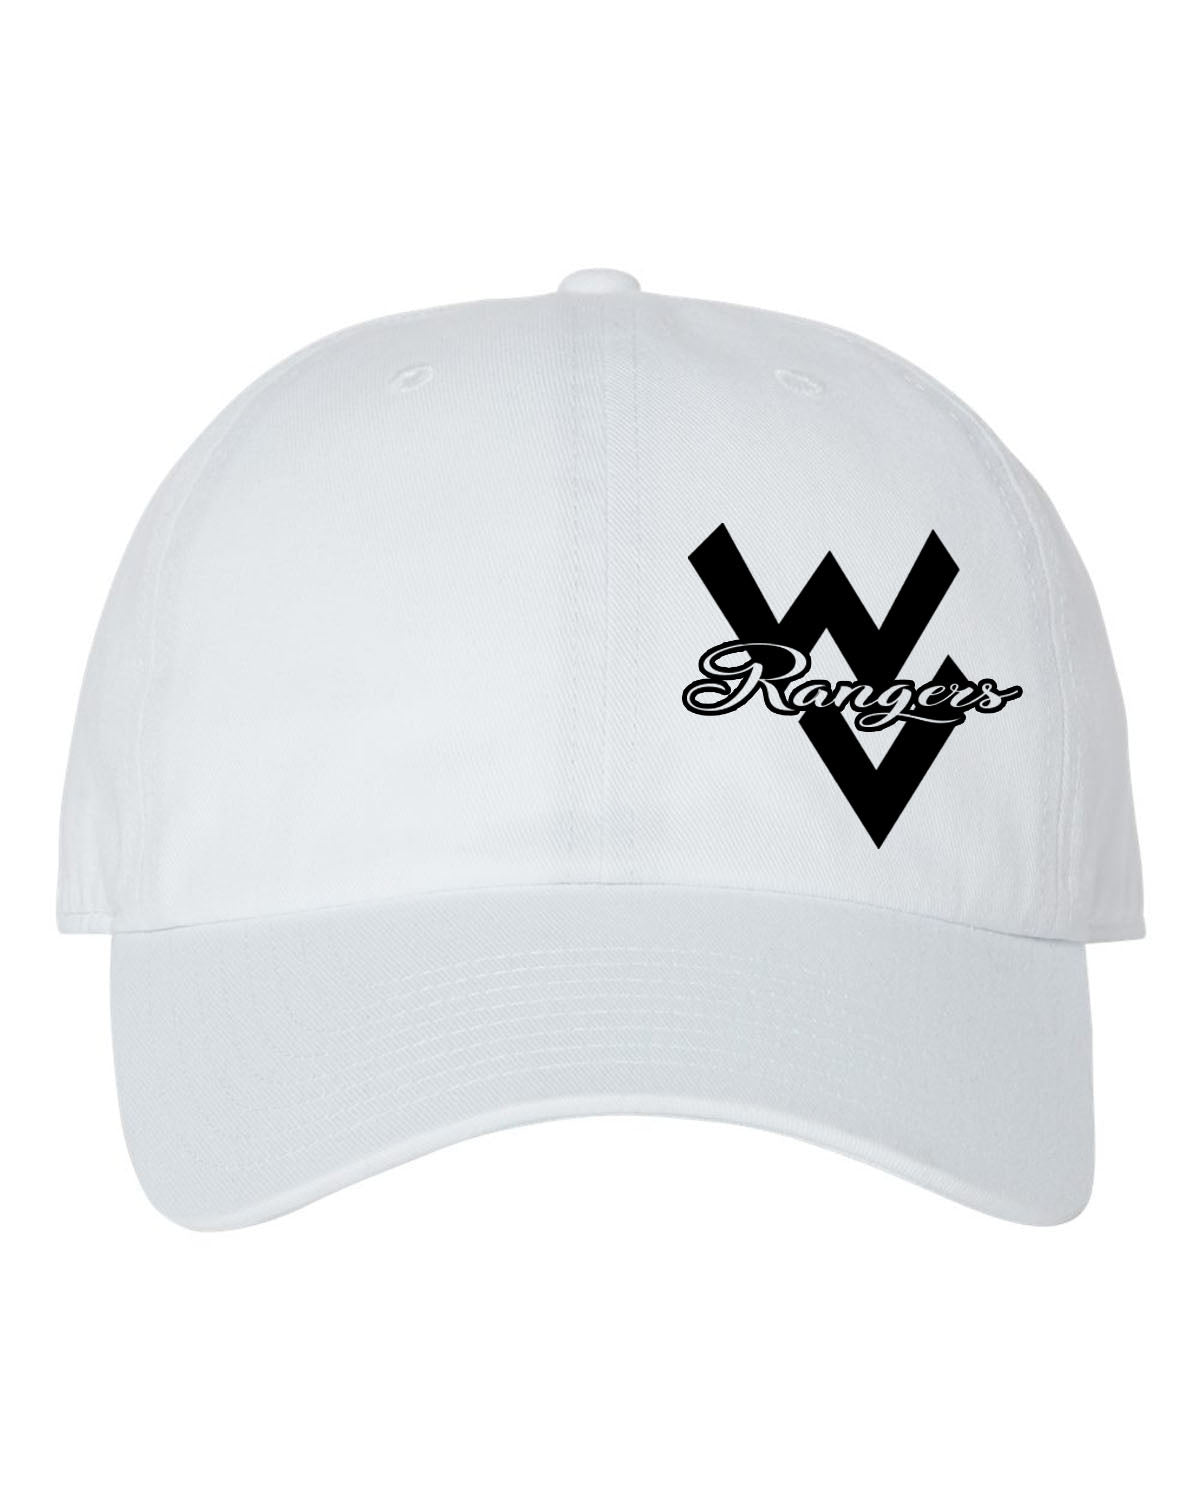 Wallkill Cheer design 1 Trucker Hat